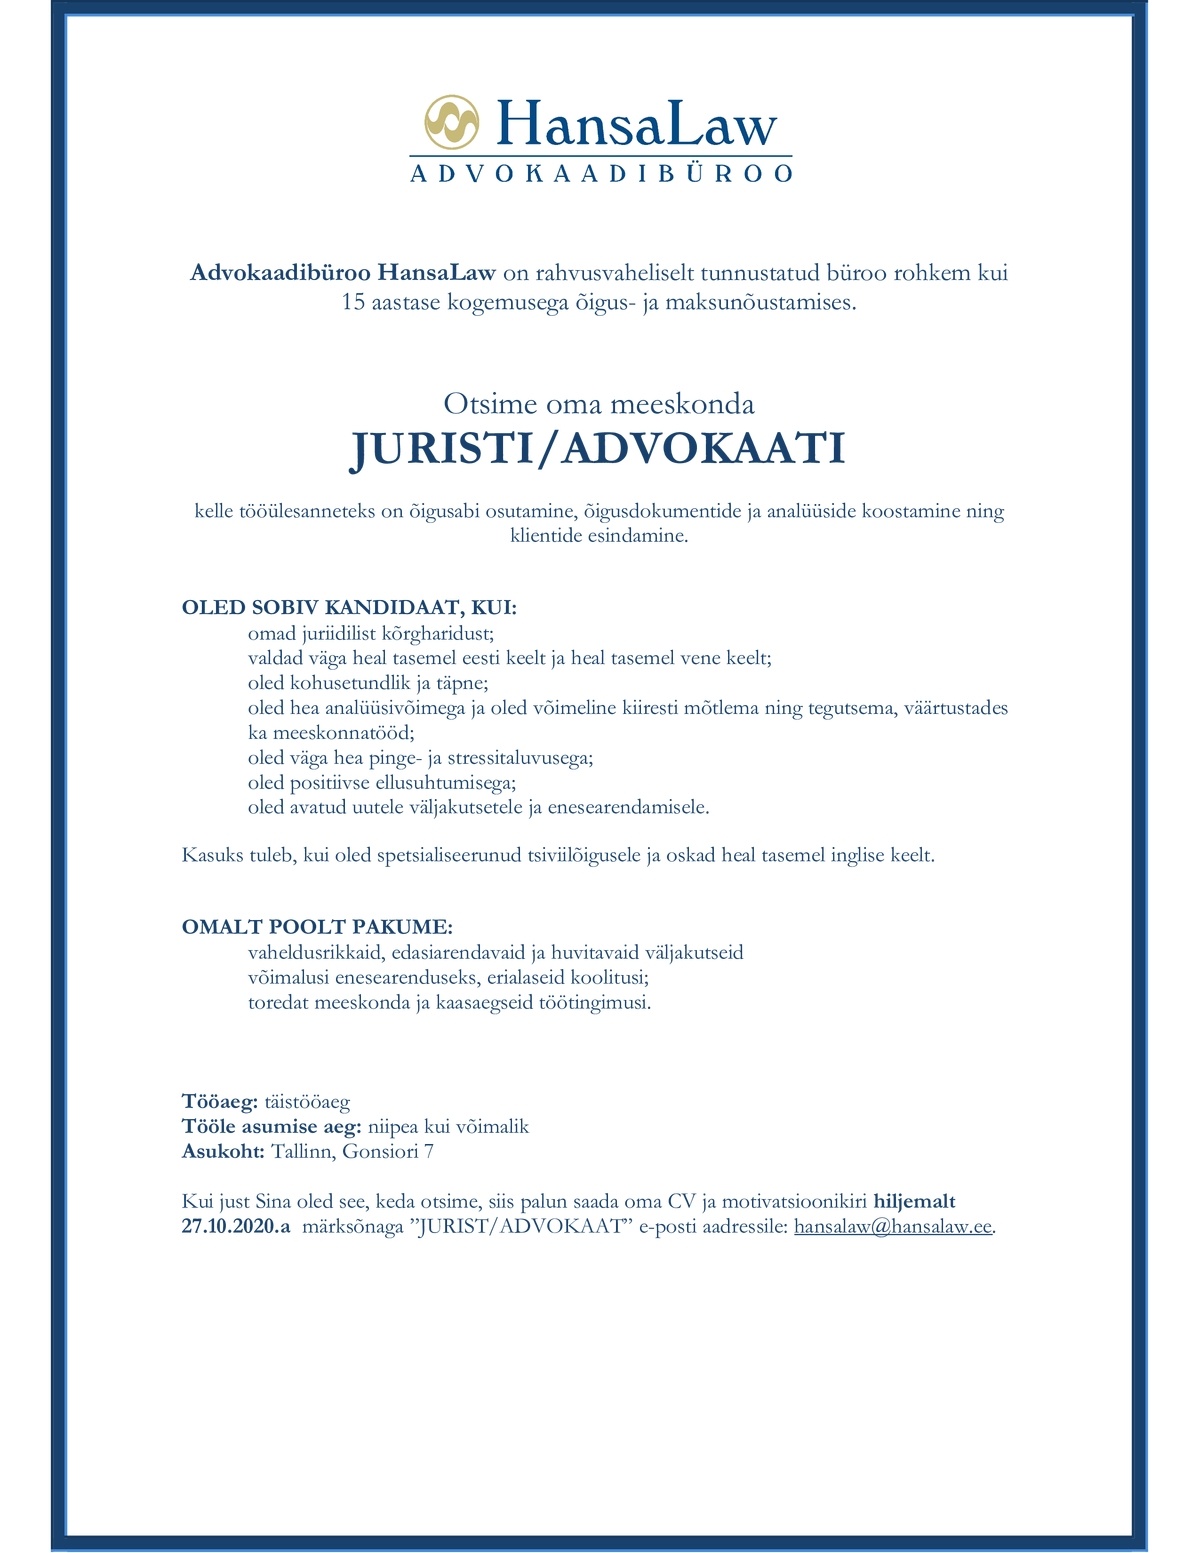 Advokaadibüroo HansaLaw OÜ JURIST / ADVOKAAT